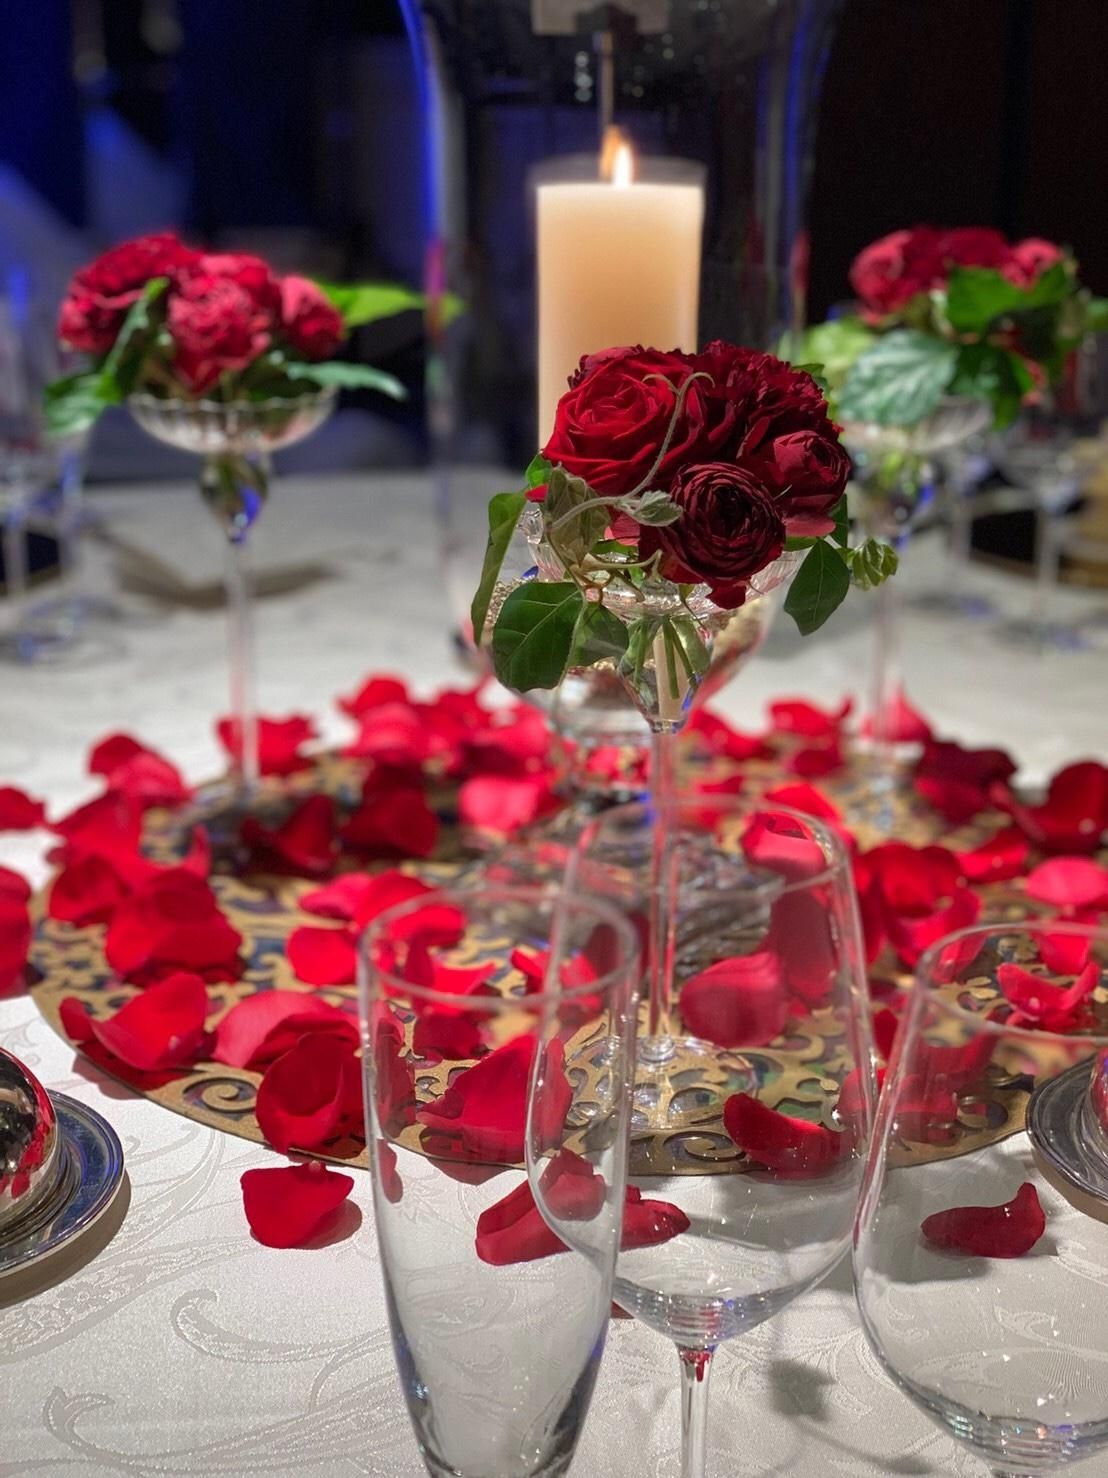 結婚式のお花選び 人気のお花とテーブル装花のコーディネートアイデアをご紹介 結婚式準備はウェディングニュース